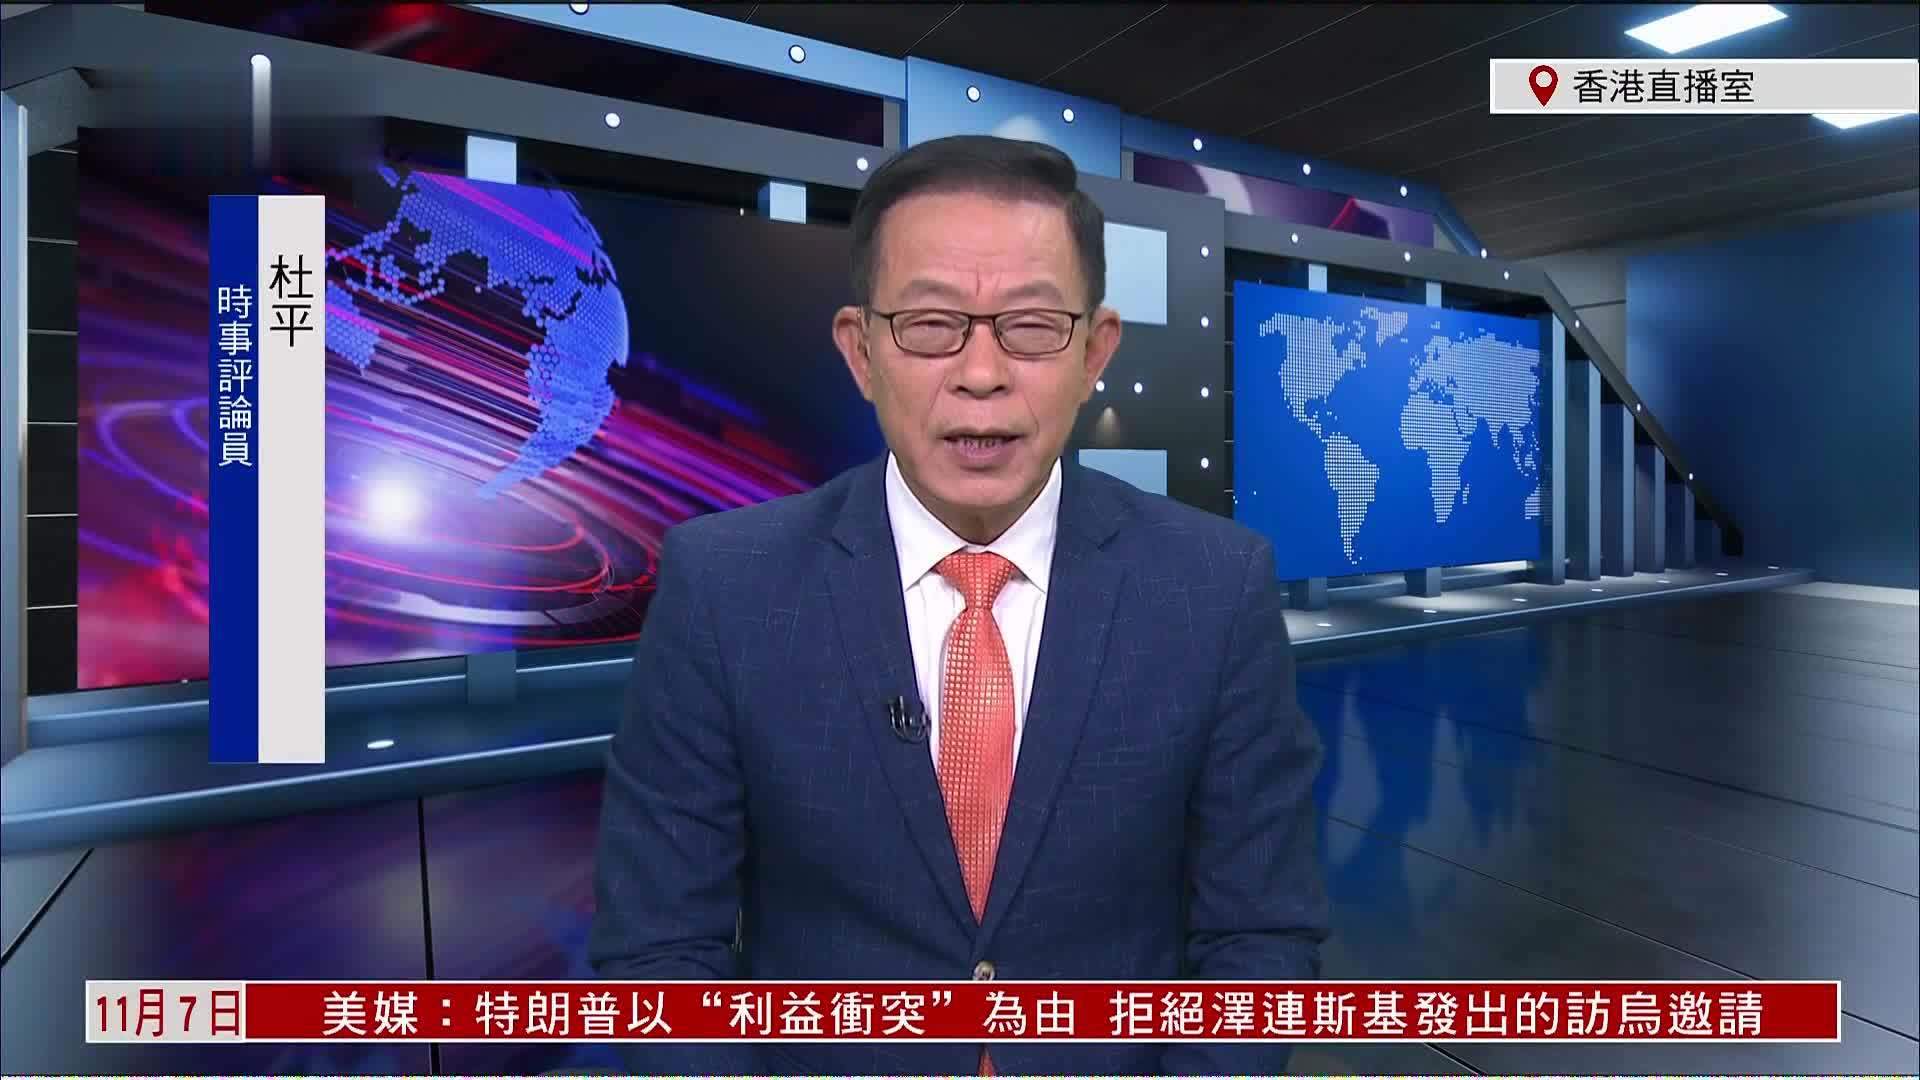 杜平:美若制裁香港 中方有反制裁法应对